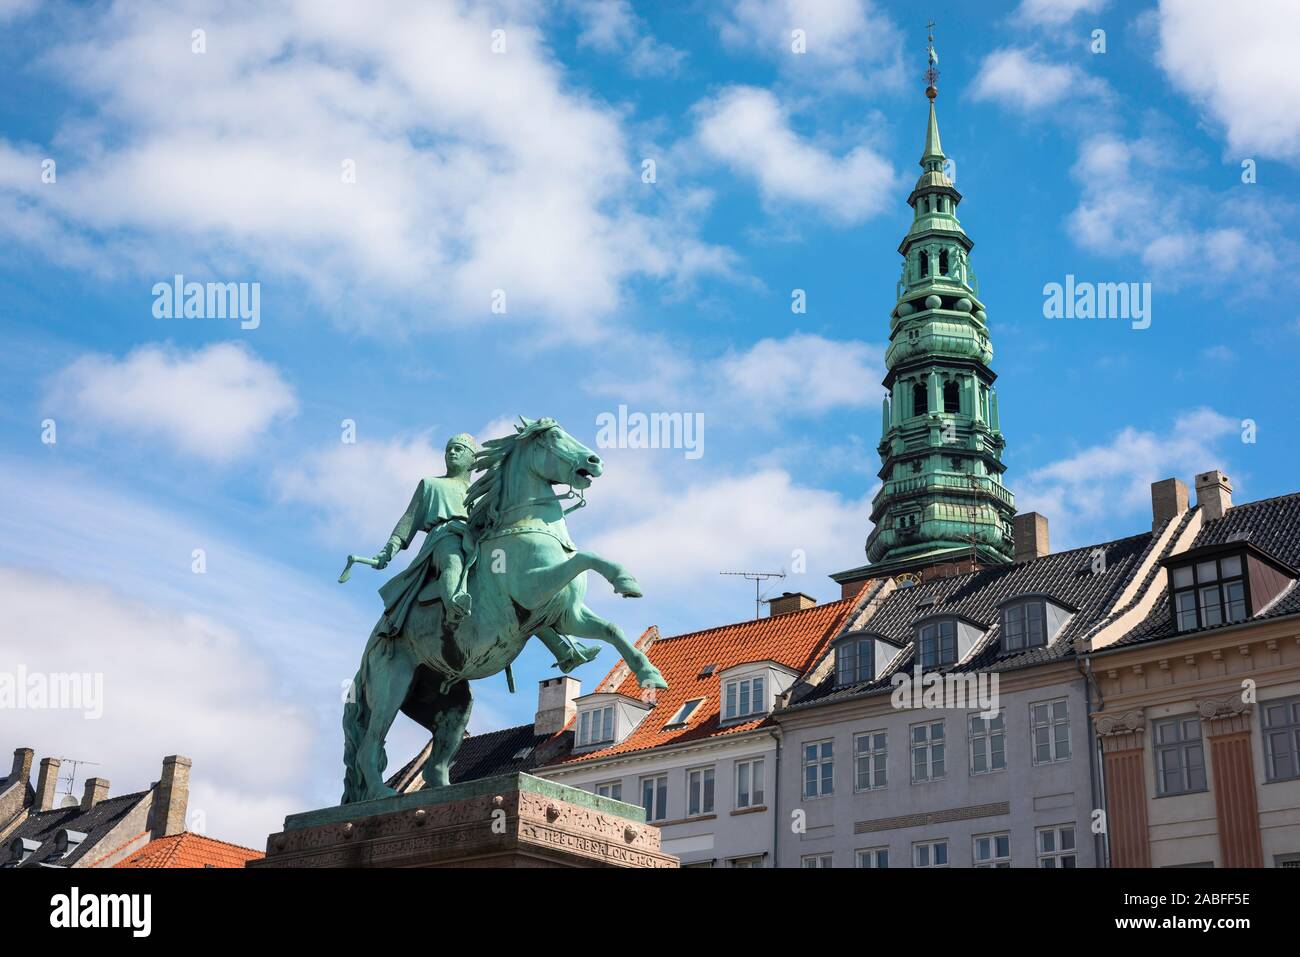 Højbro Plads, vue de la statue de l'évêque Absalon dans Højbro Plads, une place dans le centre-ville de Copenhague, avec Nikolaj church tower au loin. Banque D'Images